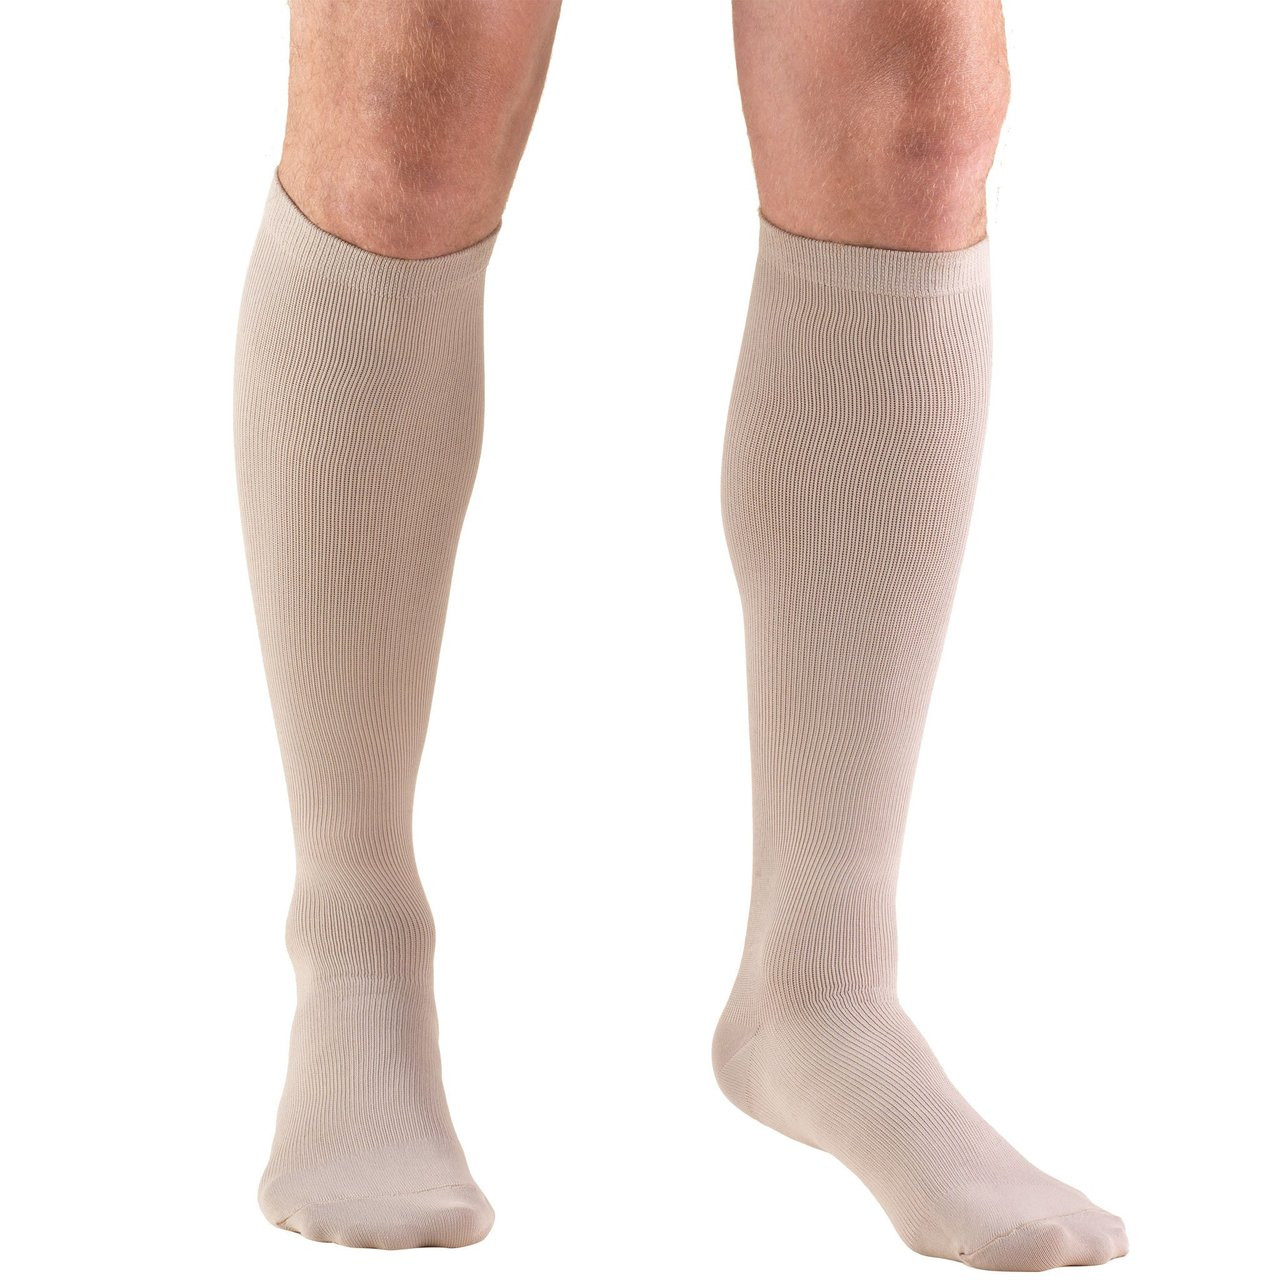 MEN'S DRESS Socks 30-40mmHg Knee-high, tan S-M-L-XL (1954TN)